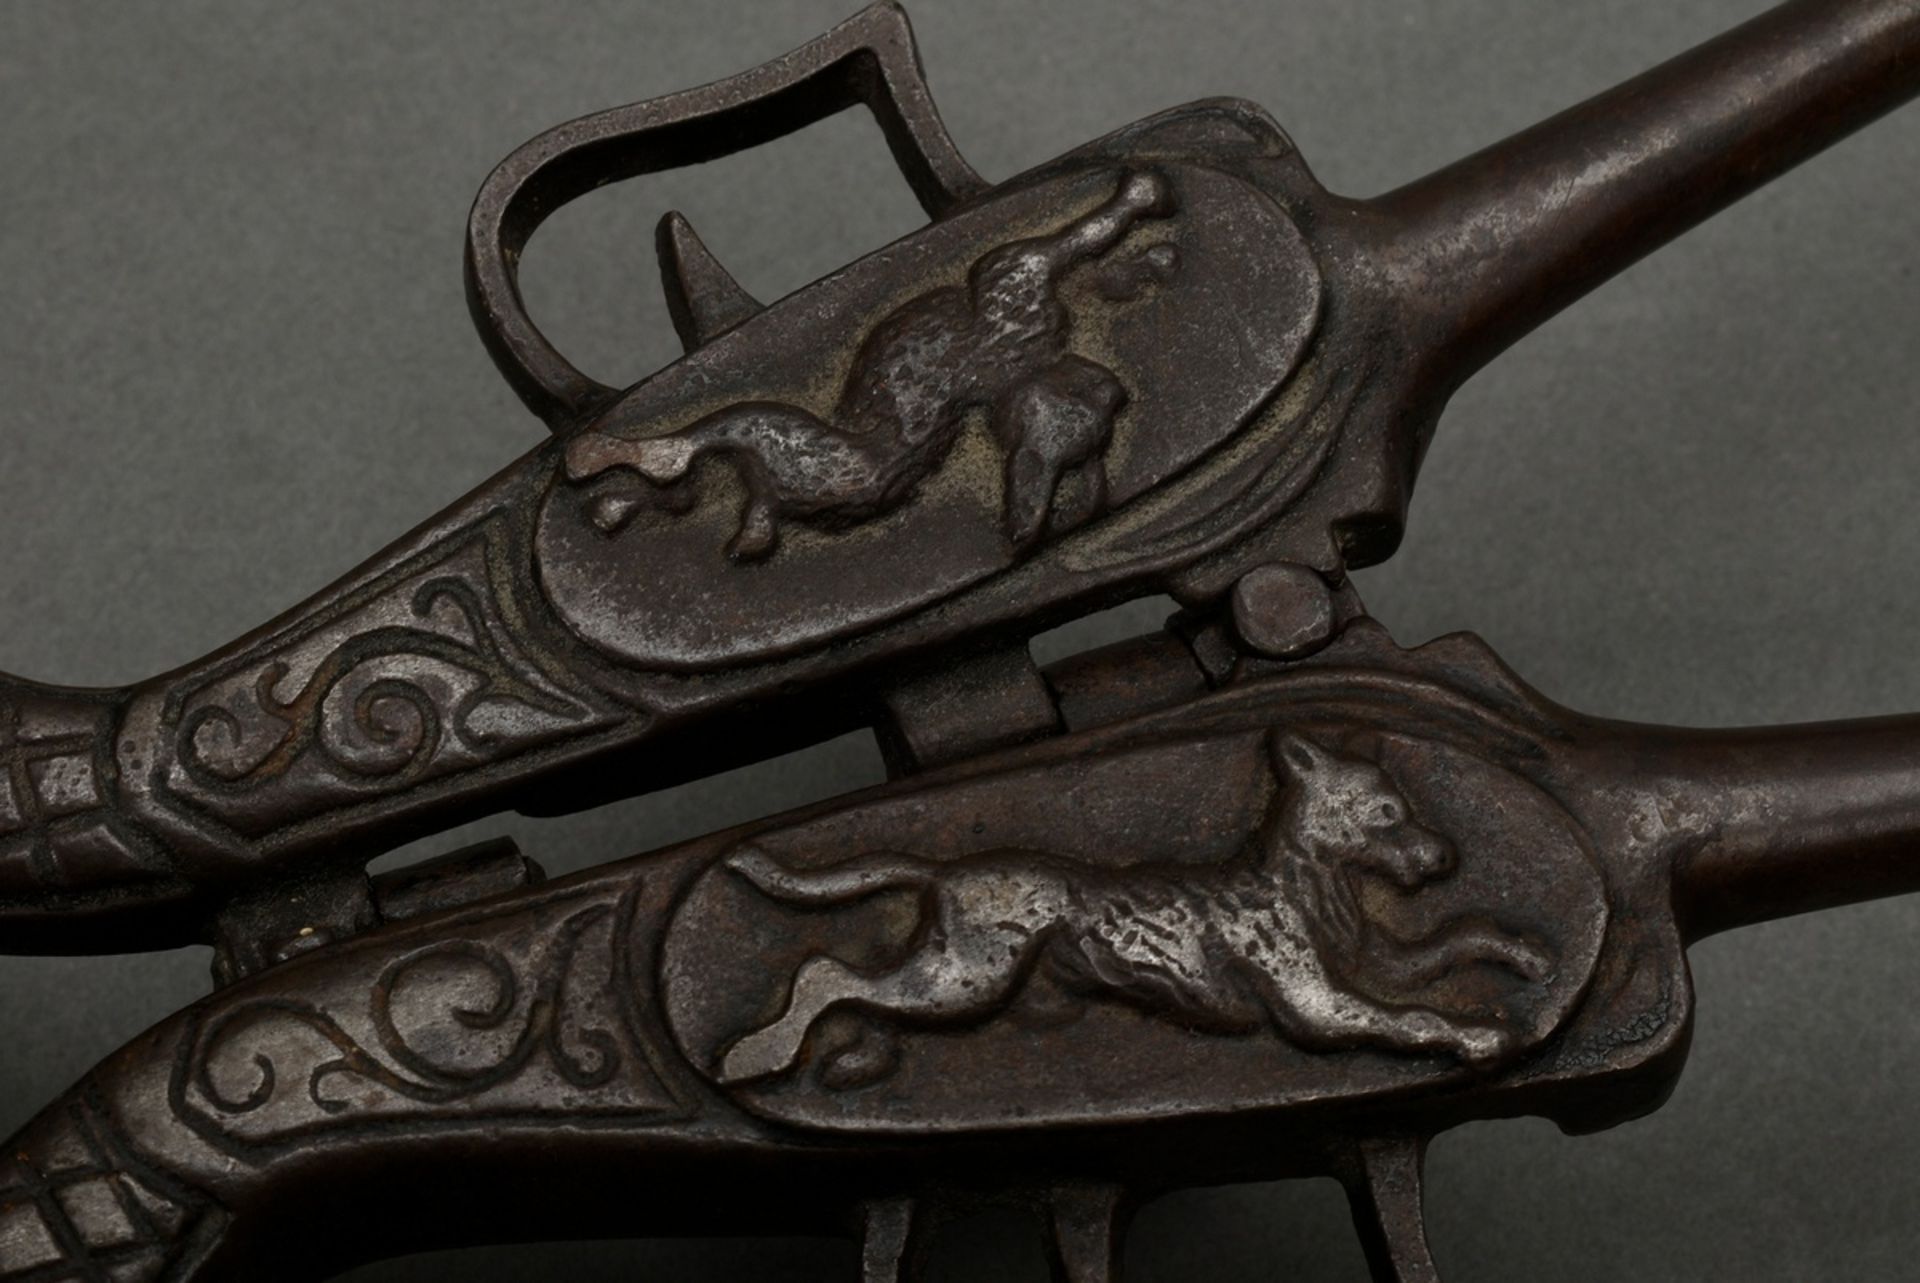 2 Diverse Teile Gusseisen Nussknacker "Papagei" (L. 17,2cm) und ausklappbarer Reise-Stiefelknecht " - Bild 3 aus 7